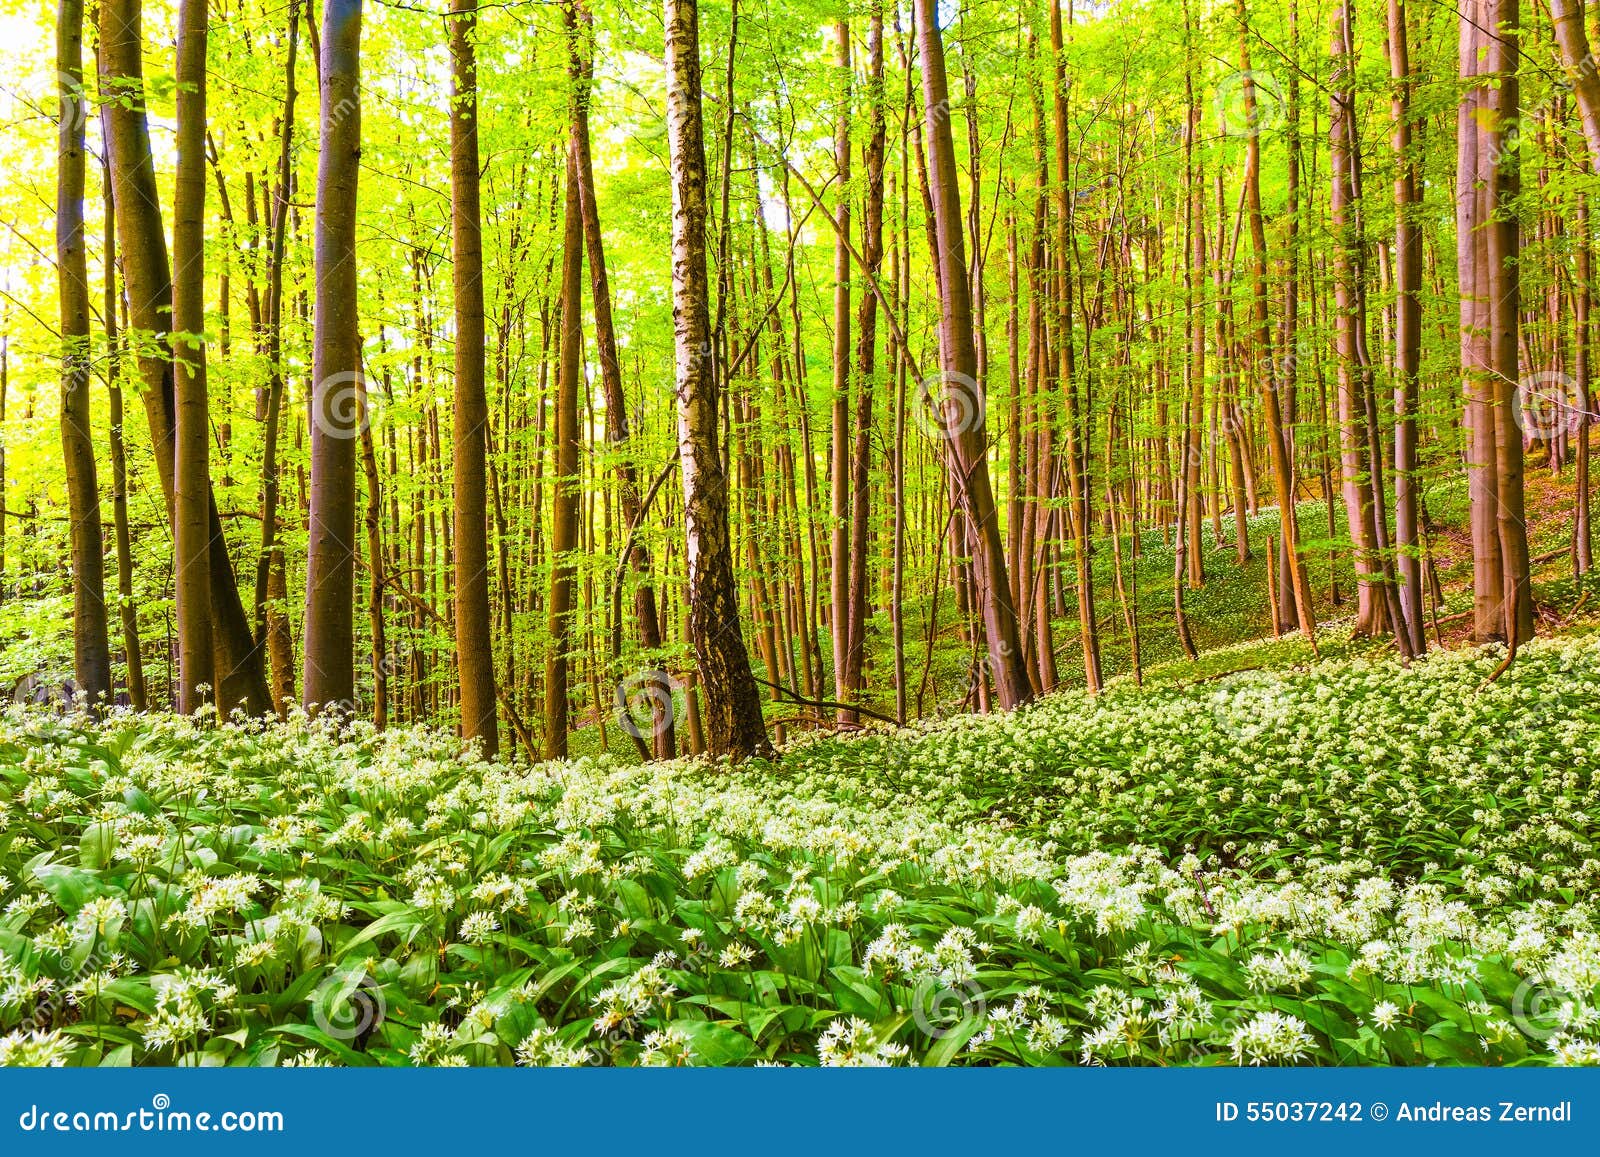 德国春天森林 库存照片. 图片 包括有 季节性, 农村, 干净, 德国, 自然, 健康, 欧洲, 大蒜, 叶子 - 55035886